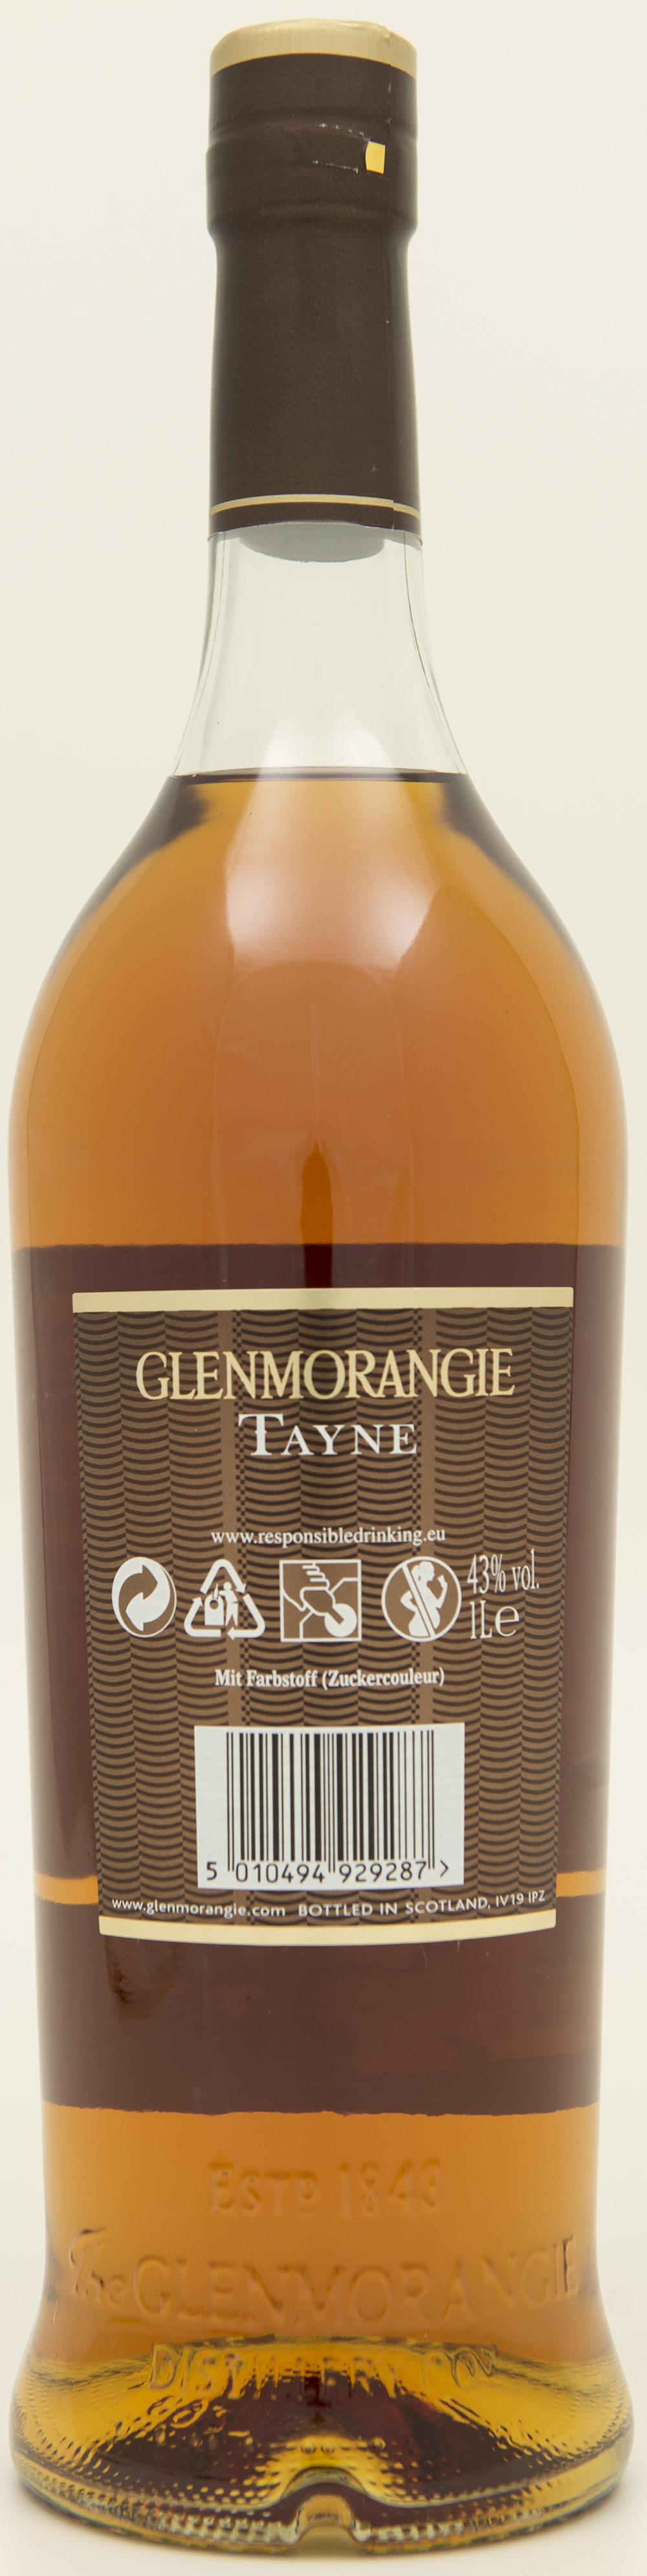 Billede: DSC_1155 - Glenmorangie The Tayne - bottle back.jpg